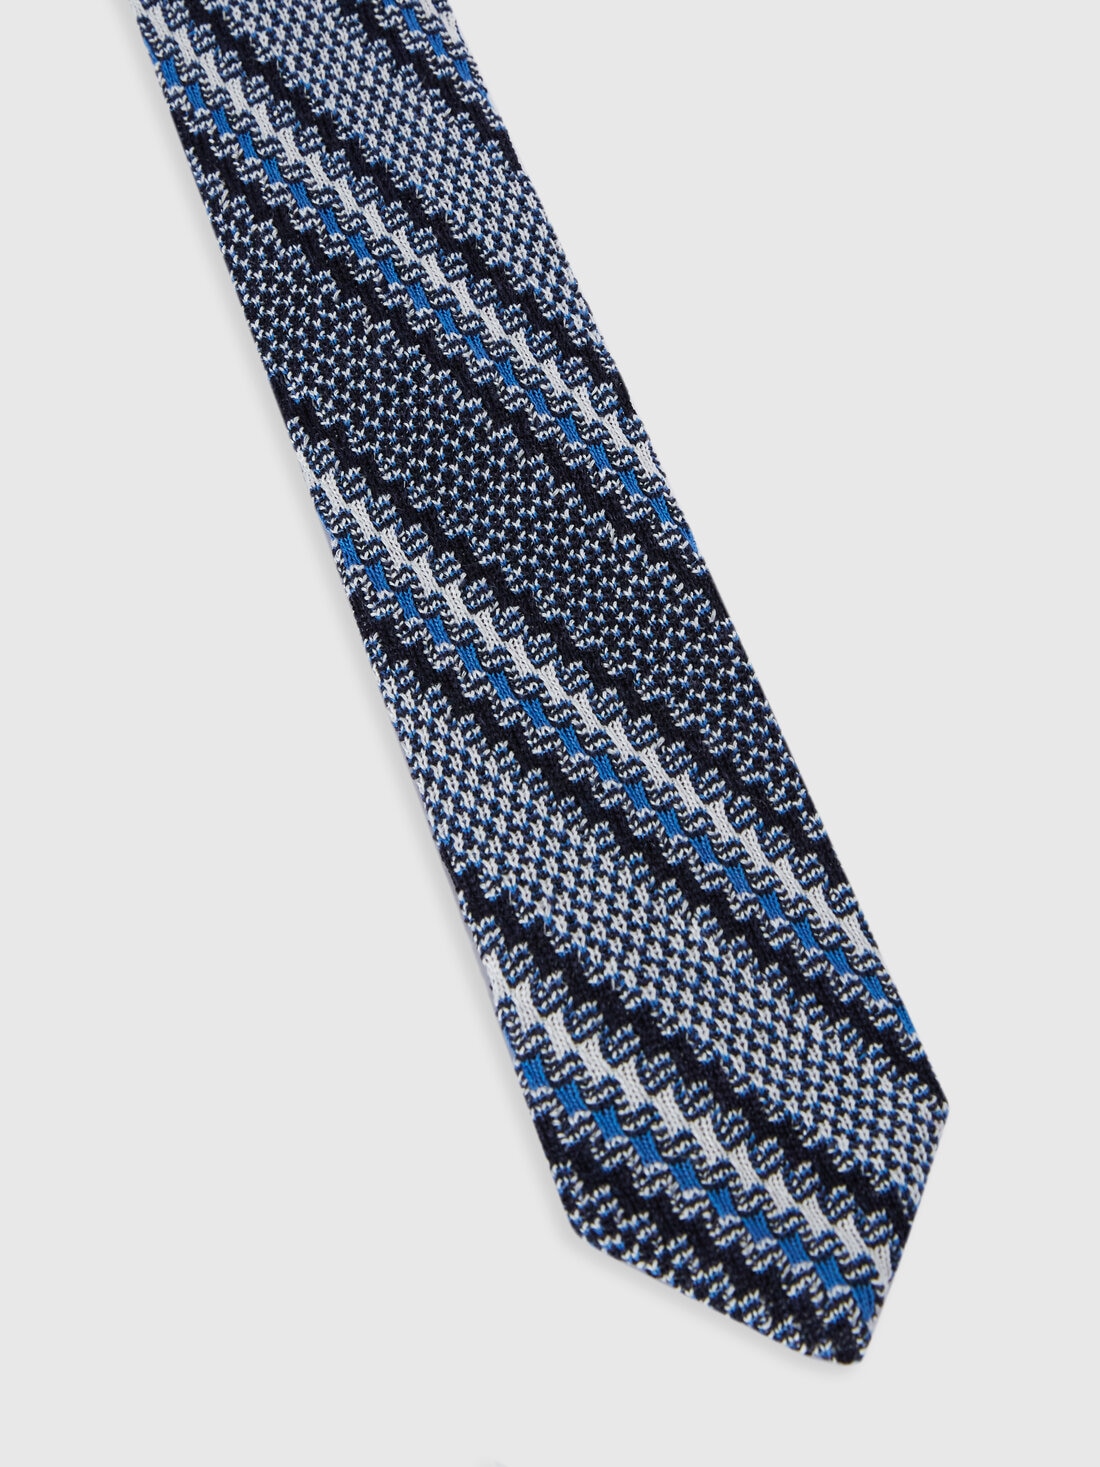 Corbata de algodón y lino con bordados, Multicolor  - 8053147141879 - 1